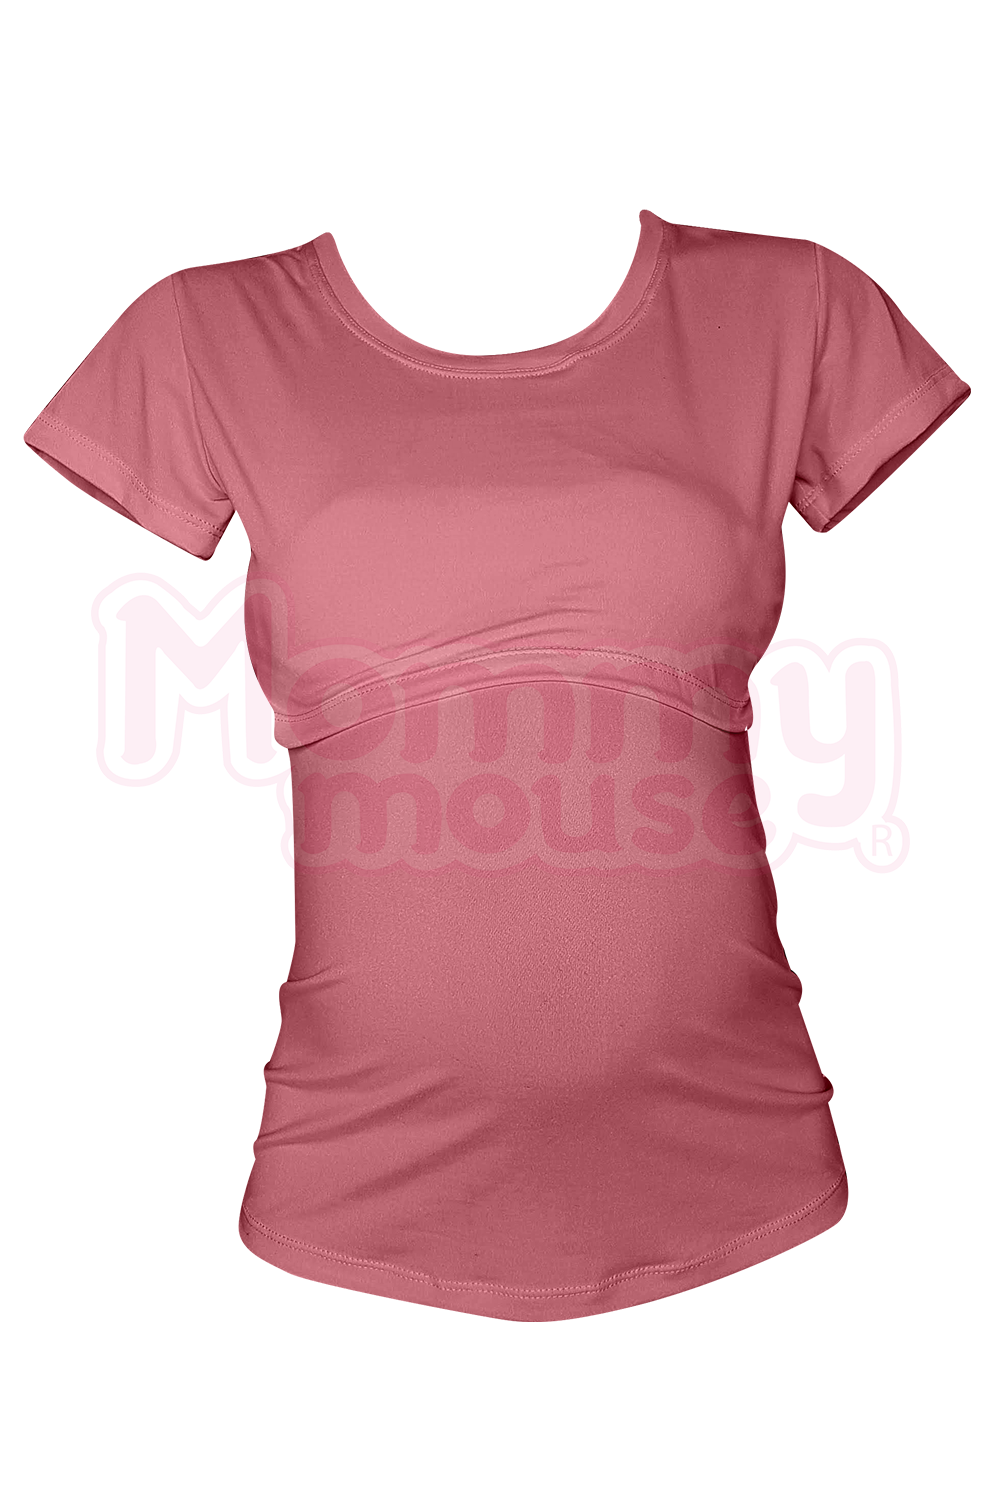 Blusa maternidad-lactancia. Palo de rosa